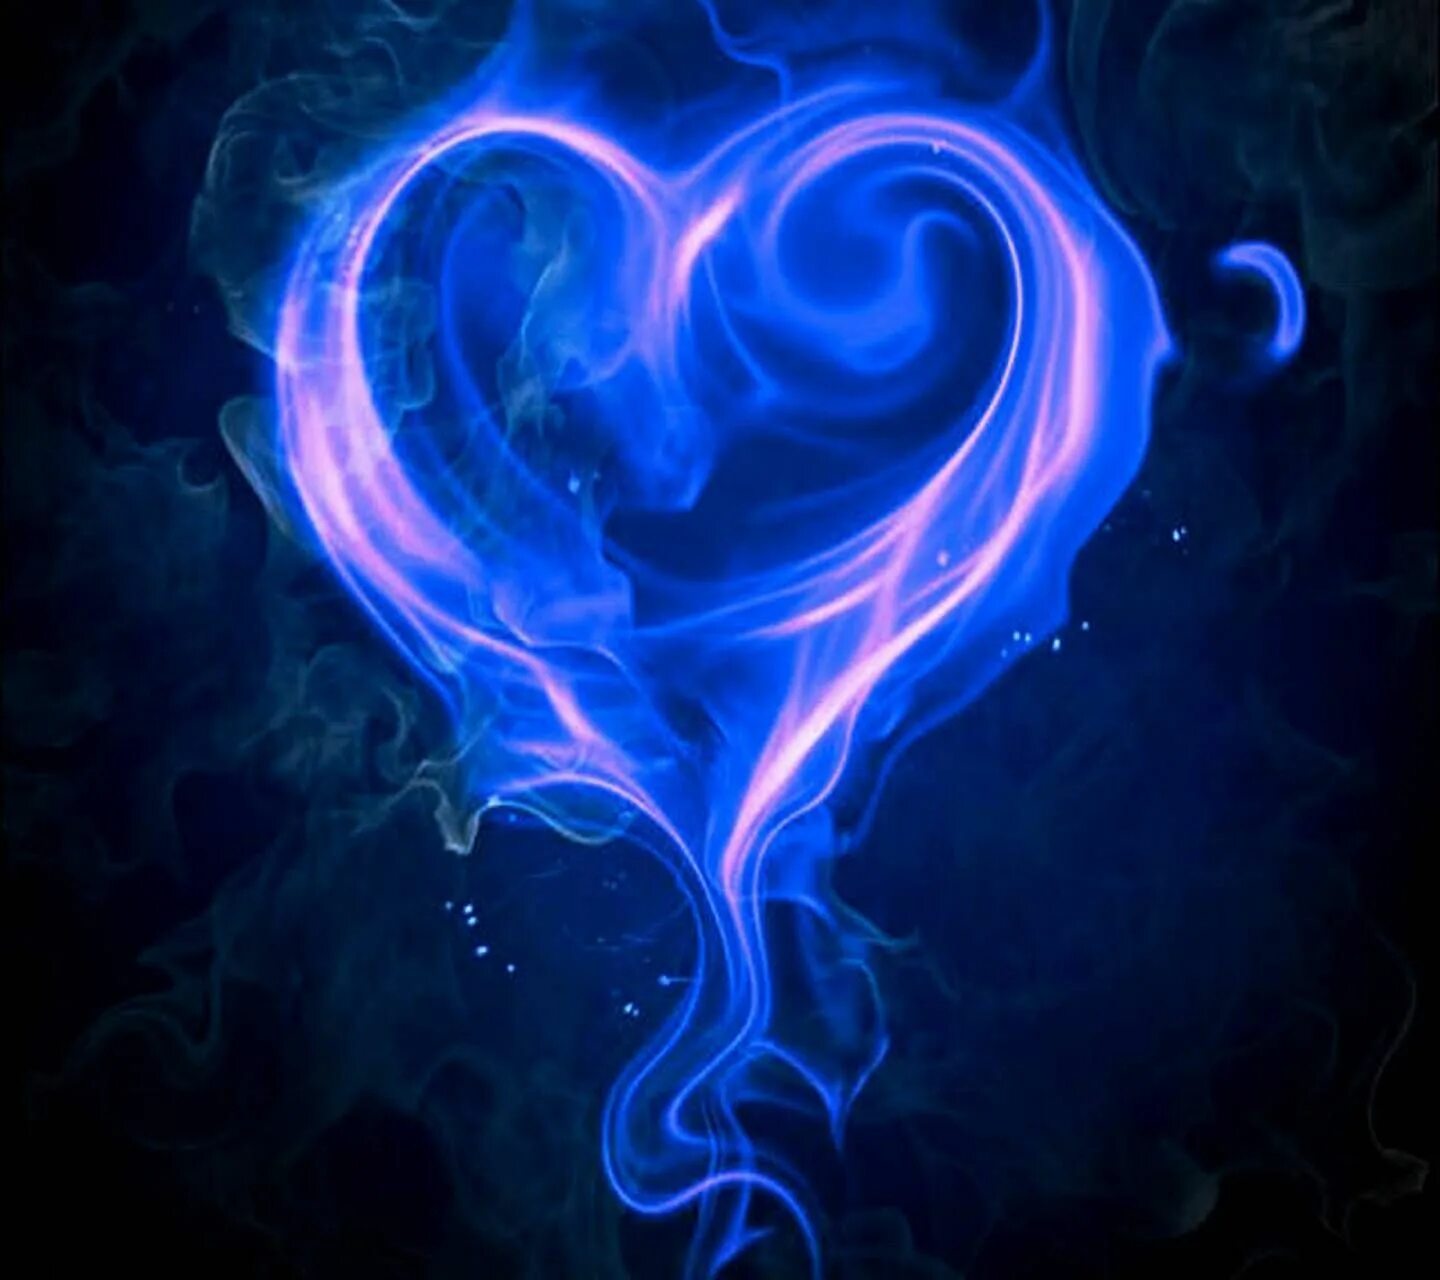 Огненное сердце. Сердечко из дыма. Синее сердечко. Горящее сердце. Огонь и вода розовый и синий